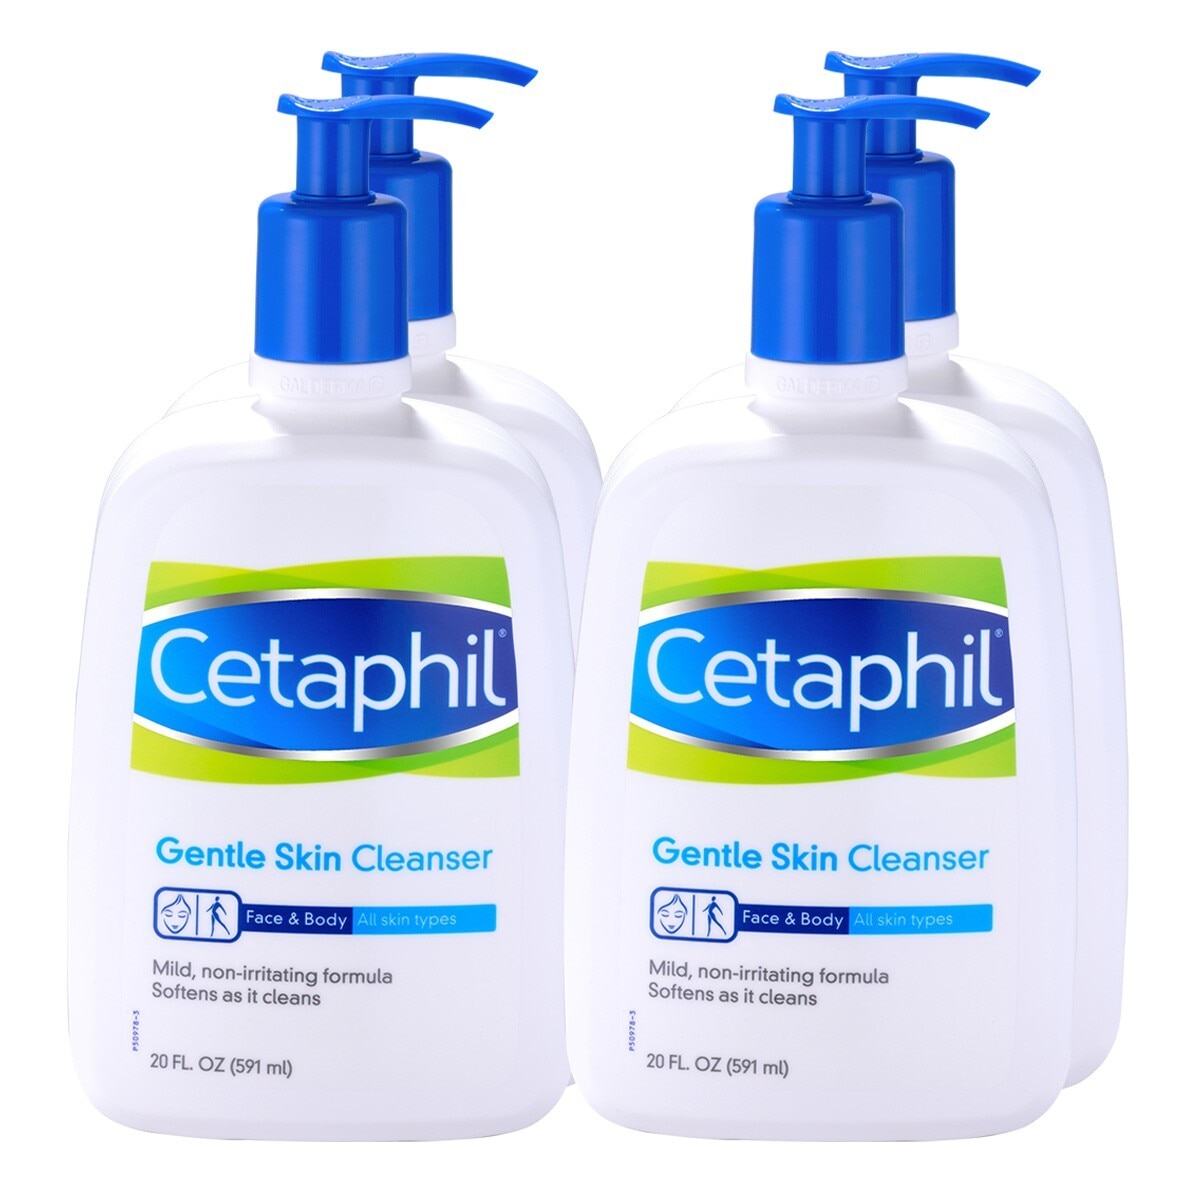 Cetaphil Gentle Skin Cleanser 591 ml X 4 Pack